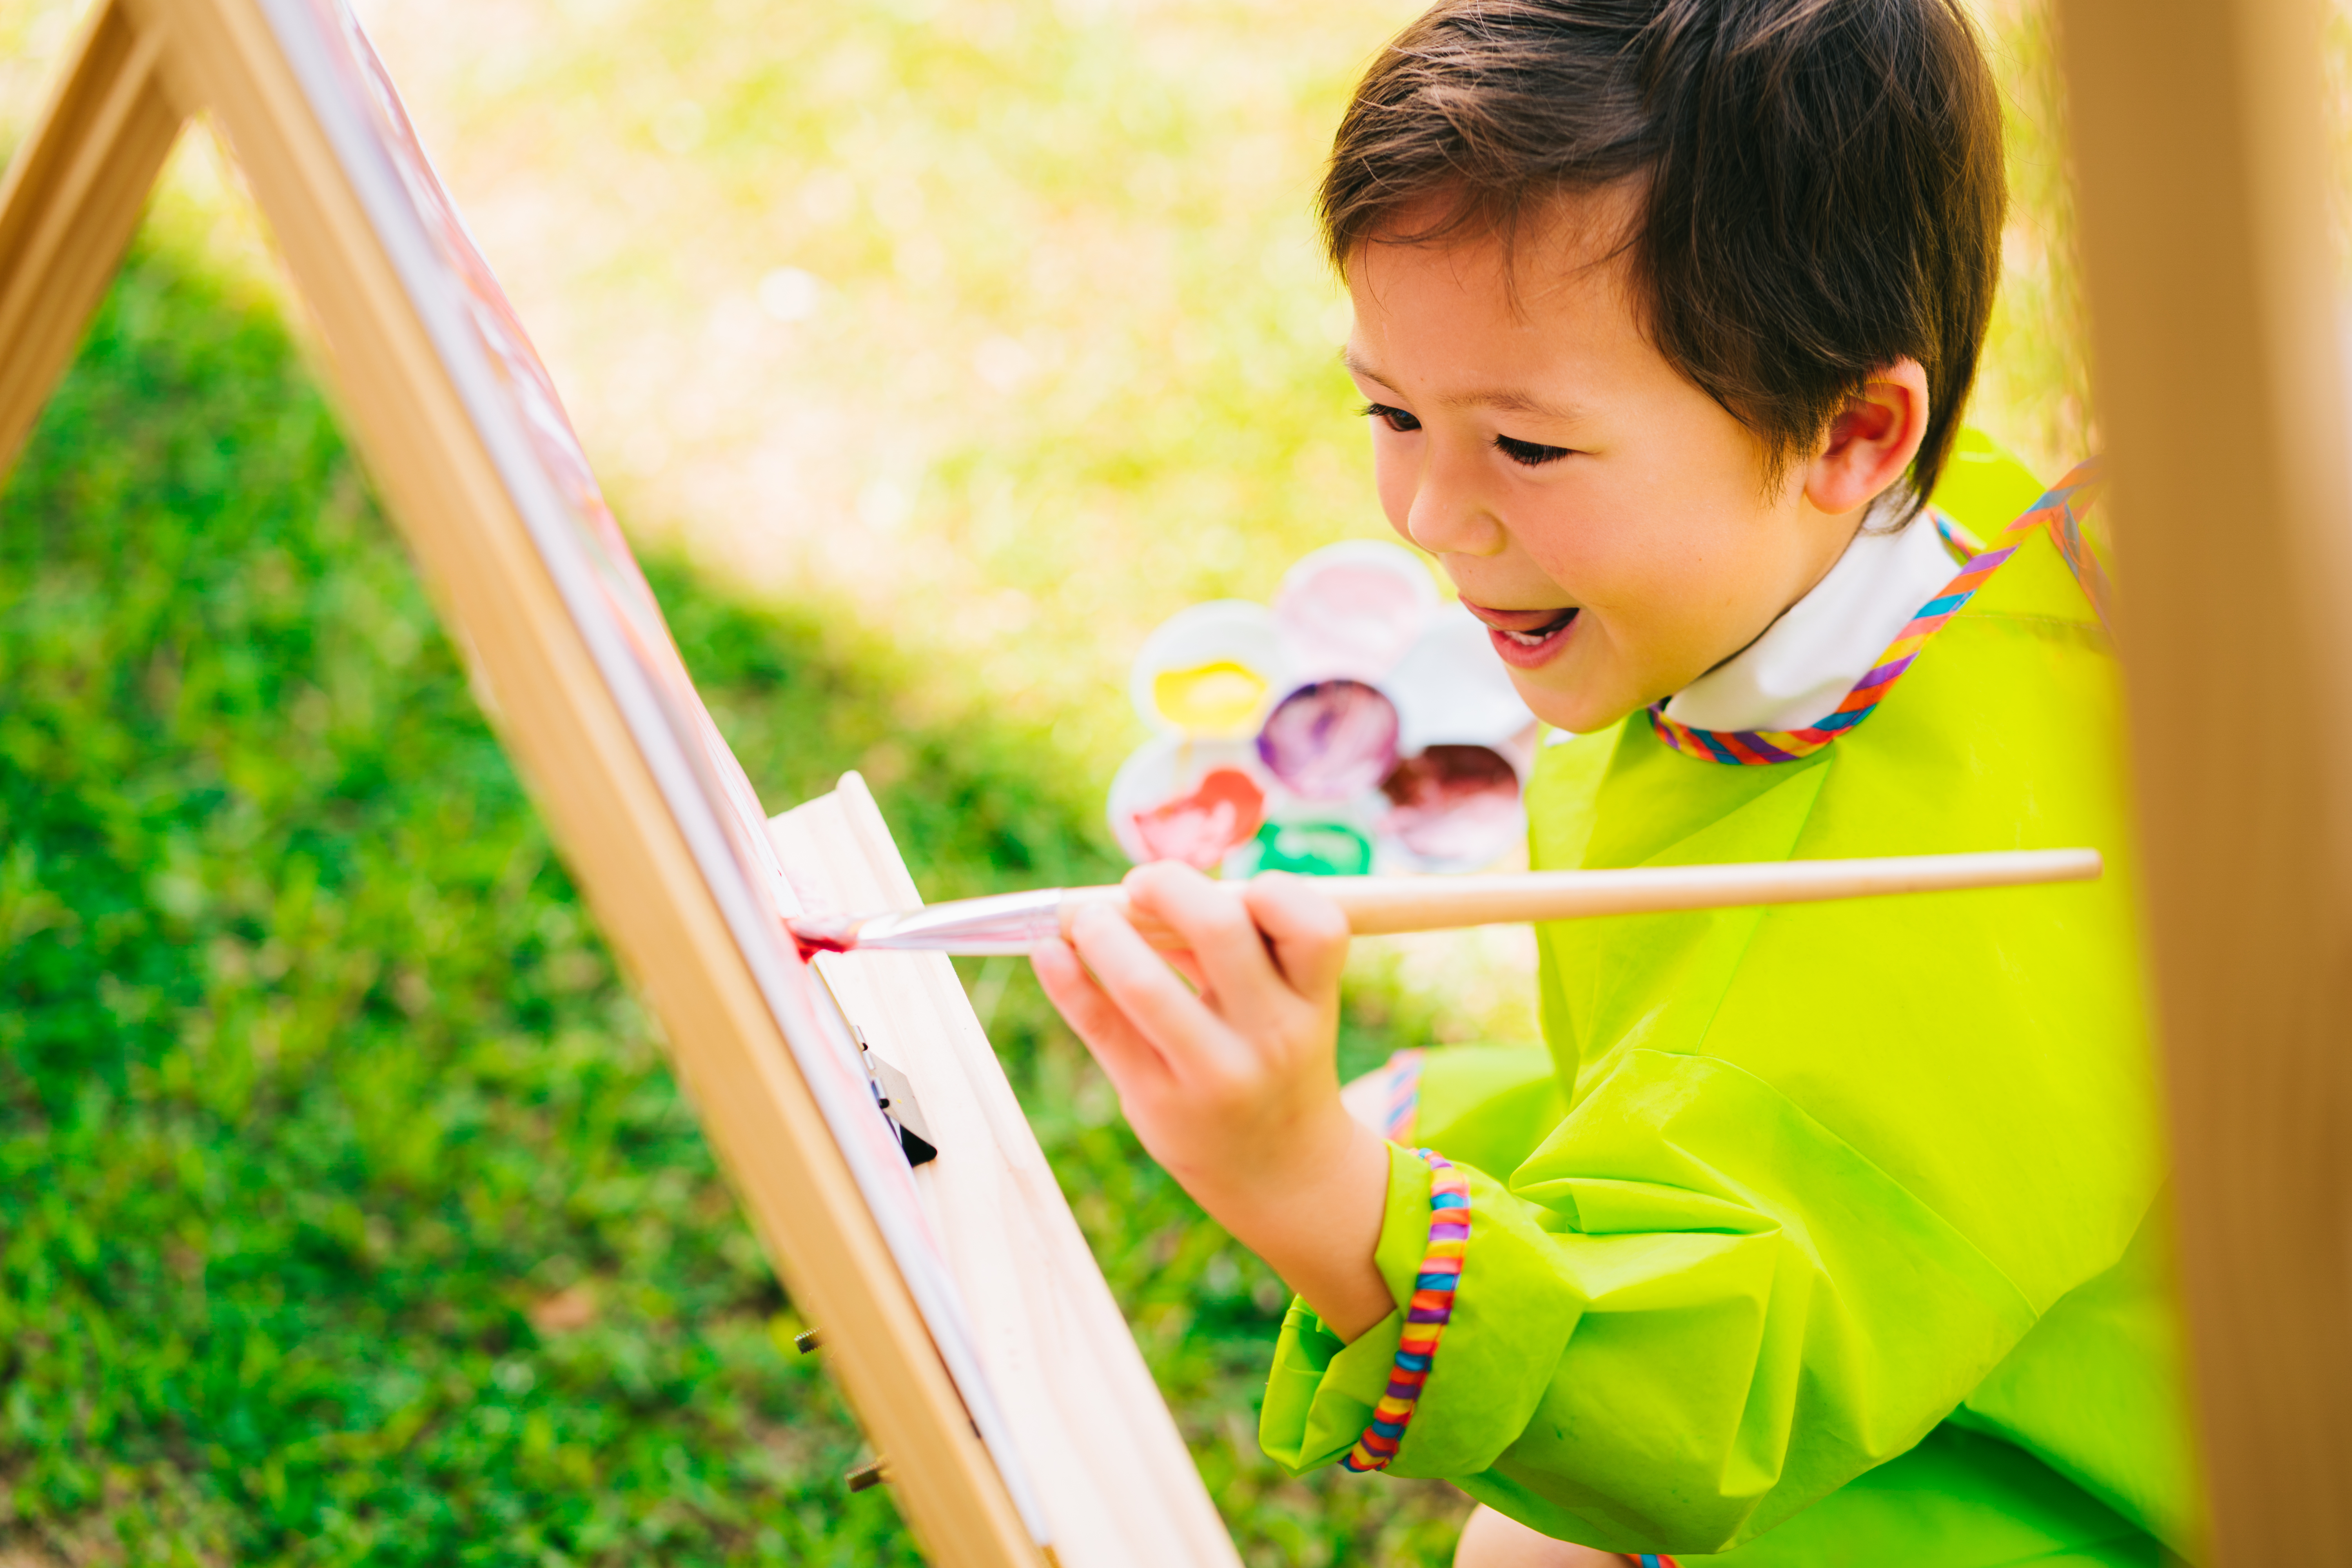 Children develop creativity through painting